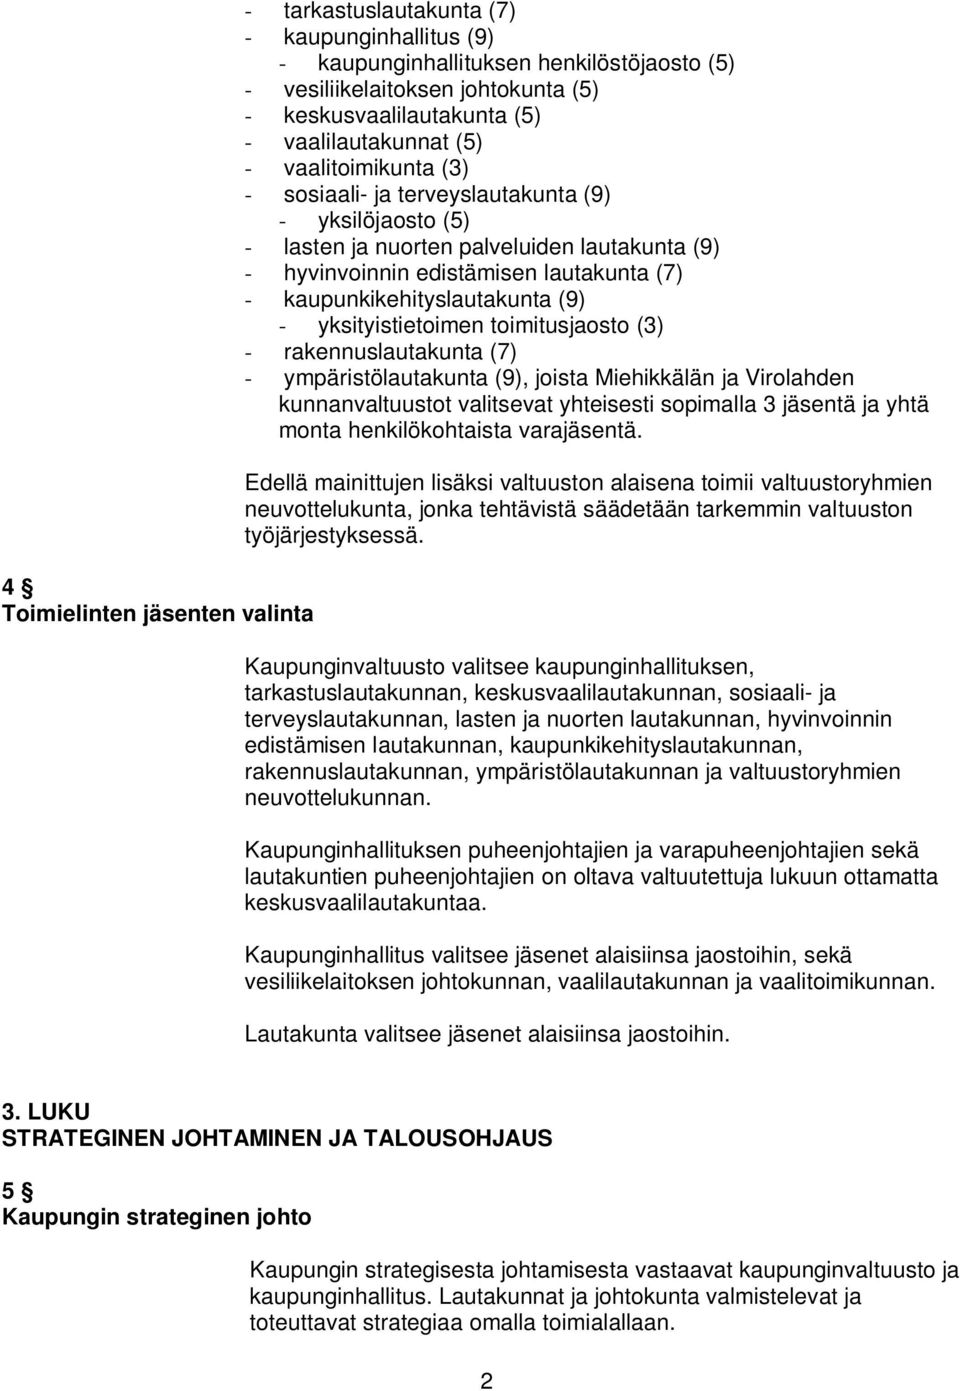 kaupunkikehityslautakunta (9) - yksityistietoimen toimitusjaosto (3) - rakennuslautakunta (7) - ympäristölautakunta (9), joista Miehikkälän ja Virolahden kunnanvaltuustot valitsevat yhteisesti